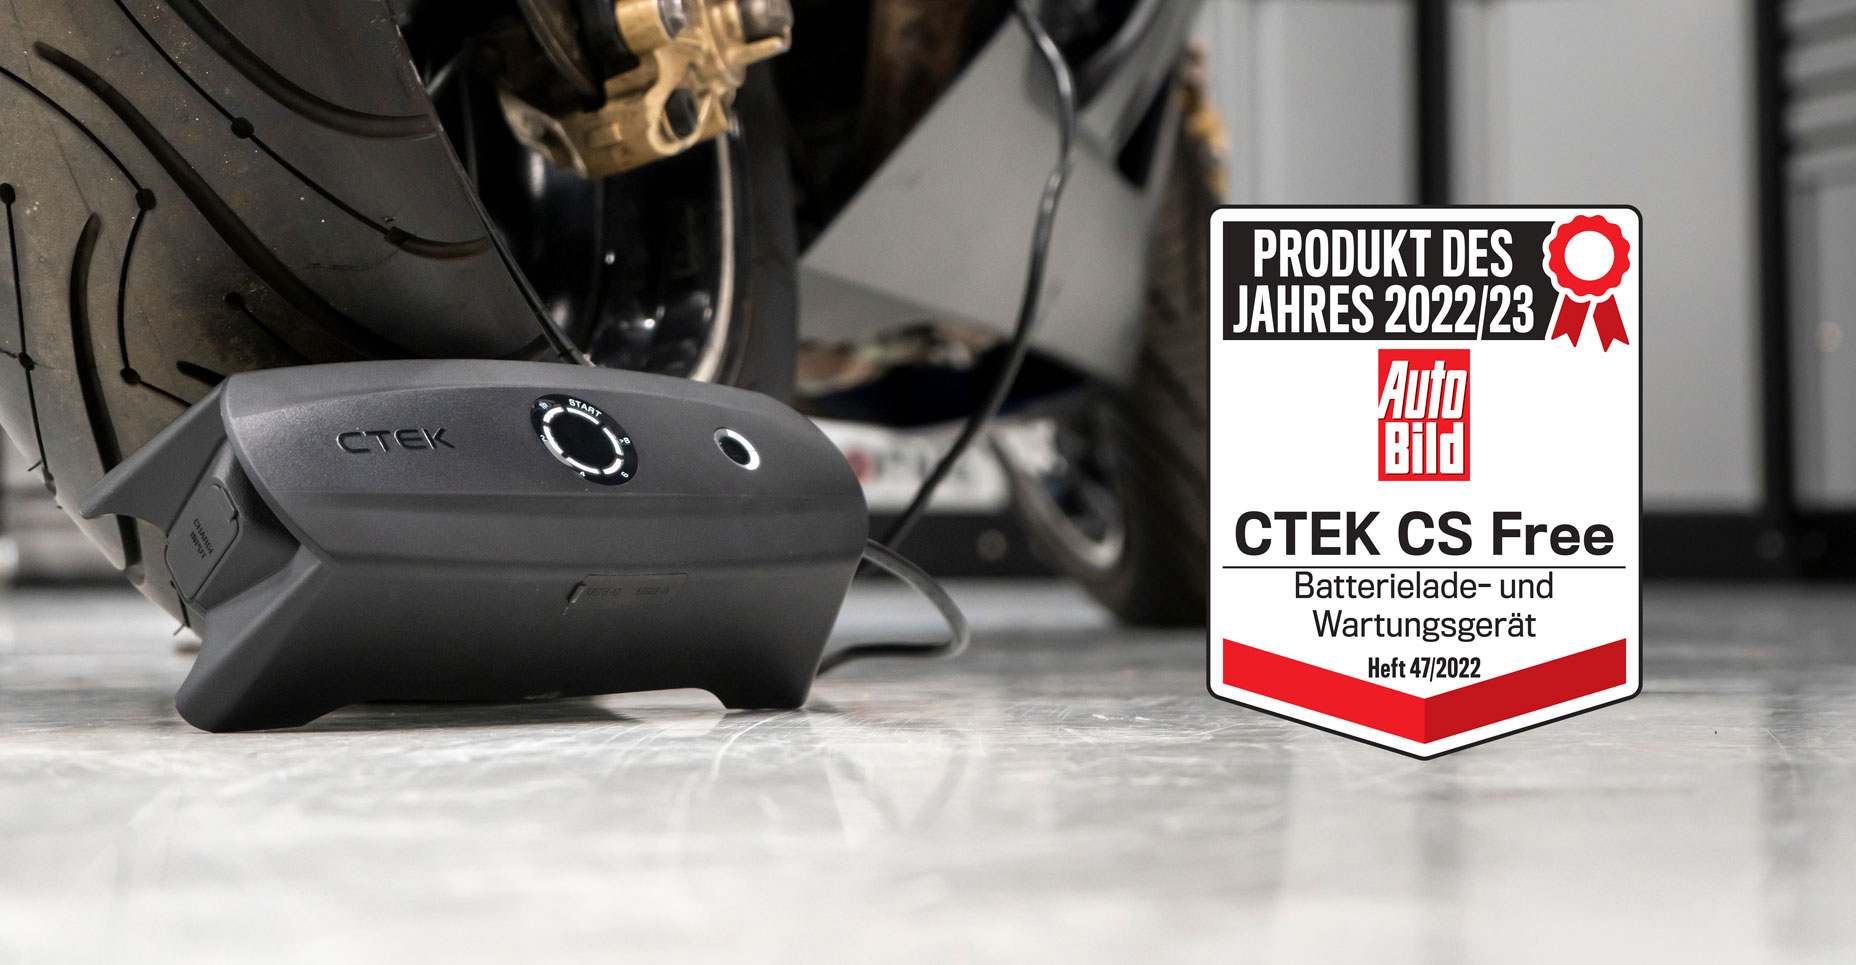 CTEK CS FREE Multifunktionell 4-in-1 bärbar batteriladdare 12V med Adaptiv Boost-teknik, art. nr: 40-462 - ctek.com